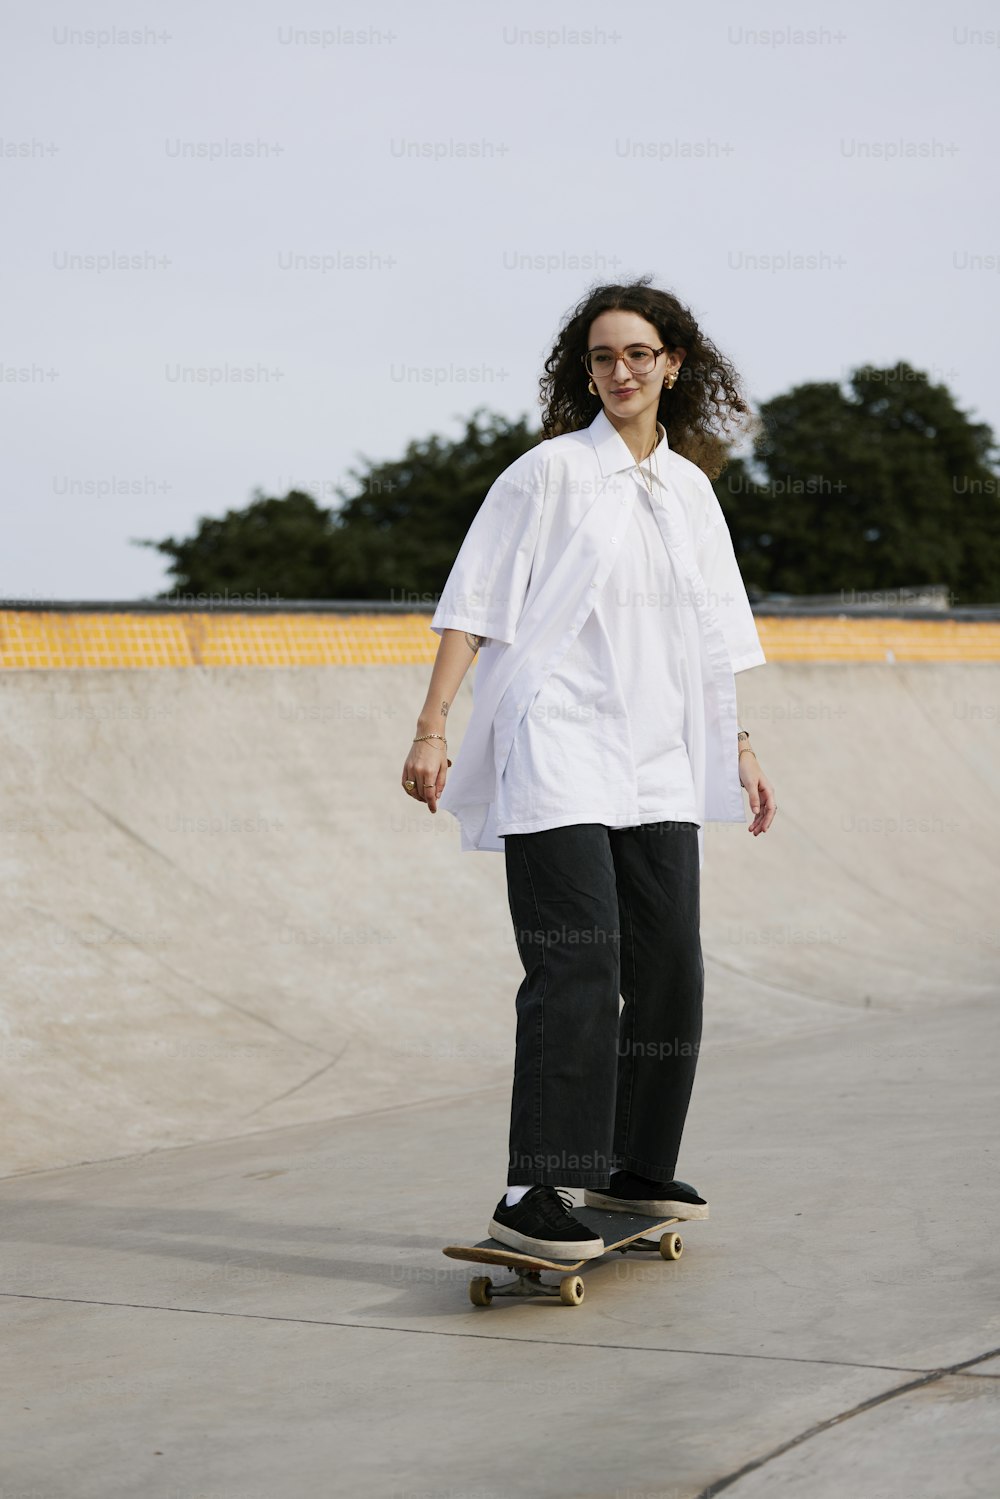 Une femme sur une planche à roulettes dans un skatepark